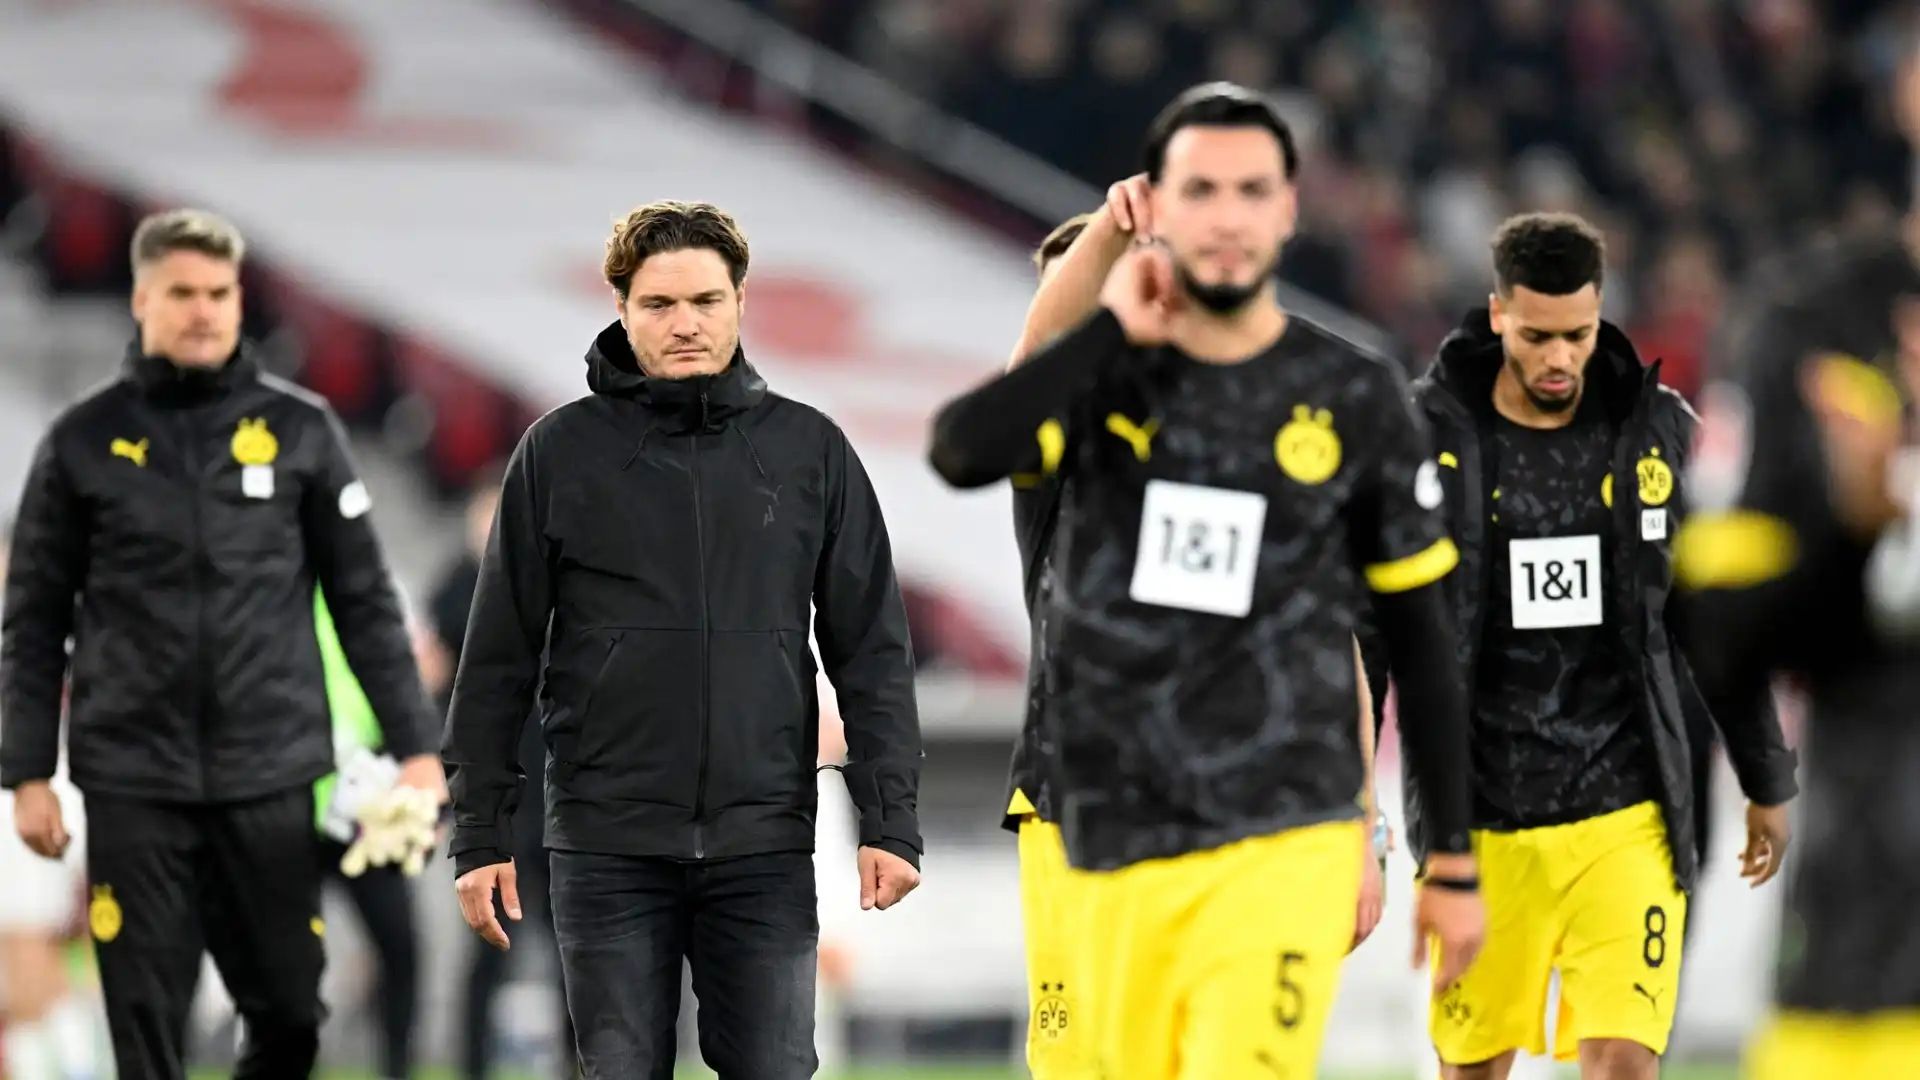 In arrivo una cessione certa a gennaio per il Borussia Dortmund